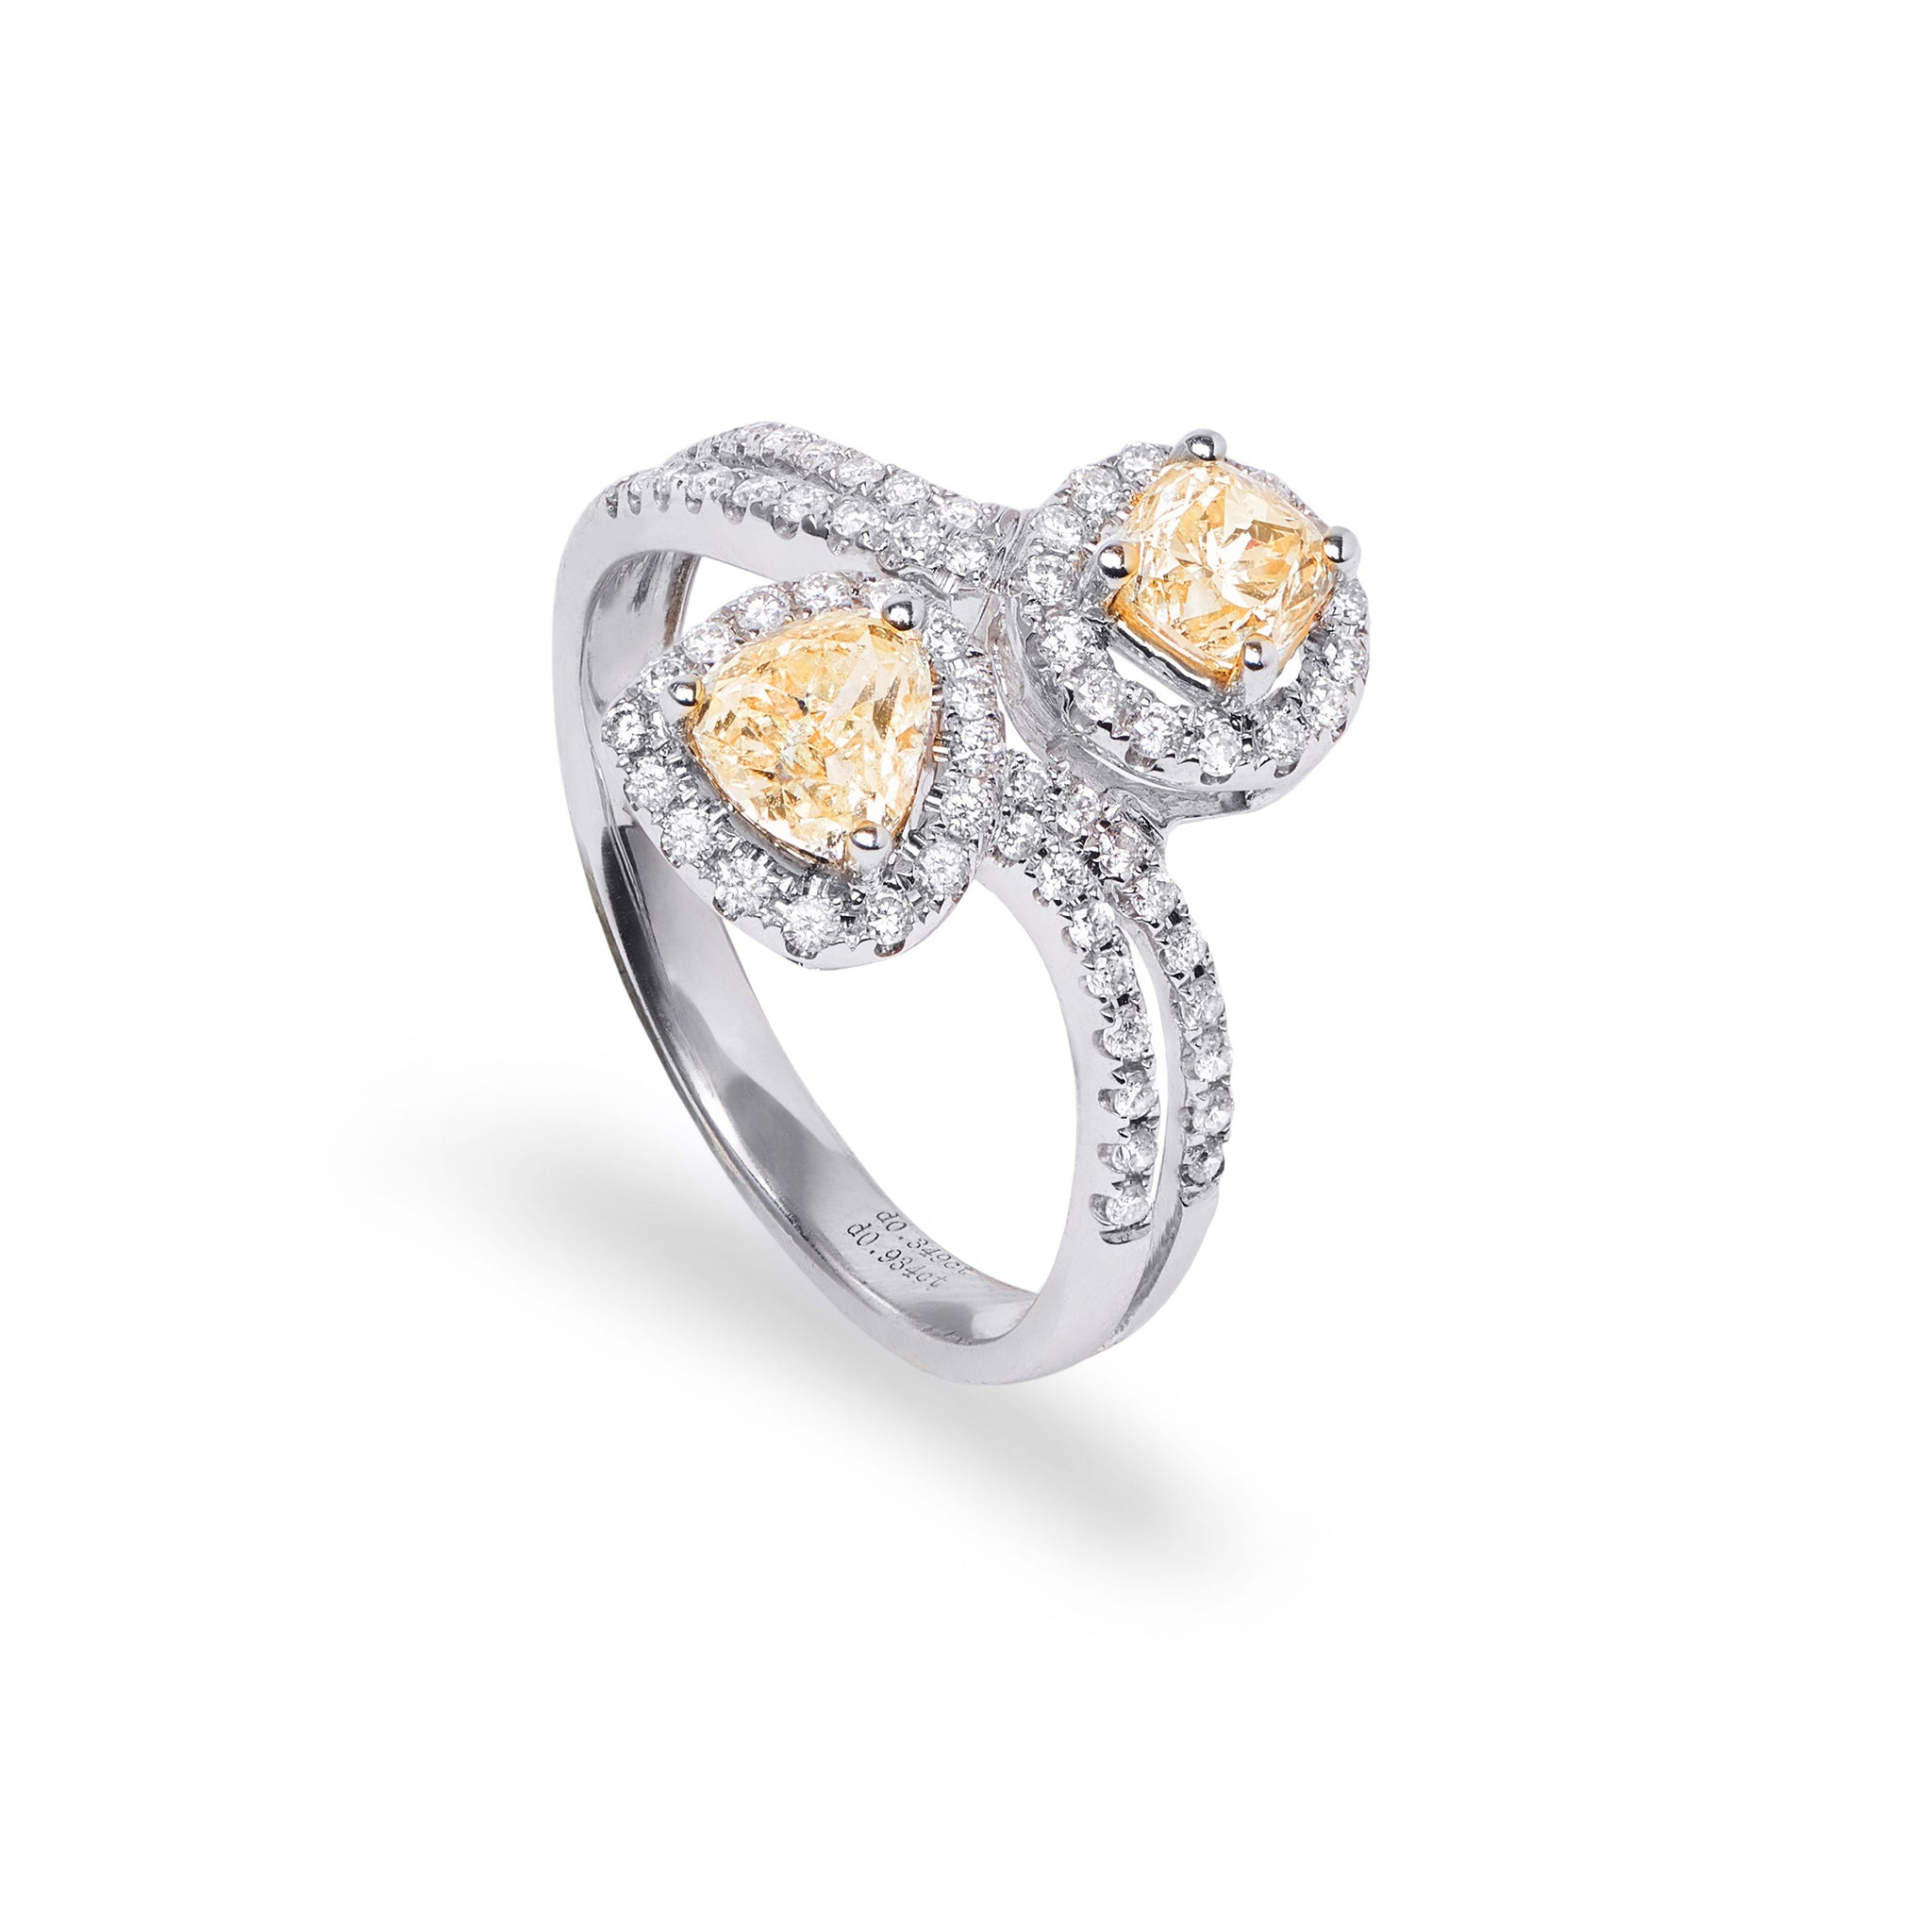 'Toi et Moi' Fancy Yellow Diamond Ring